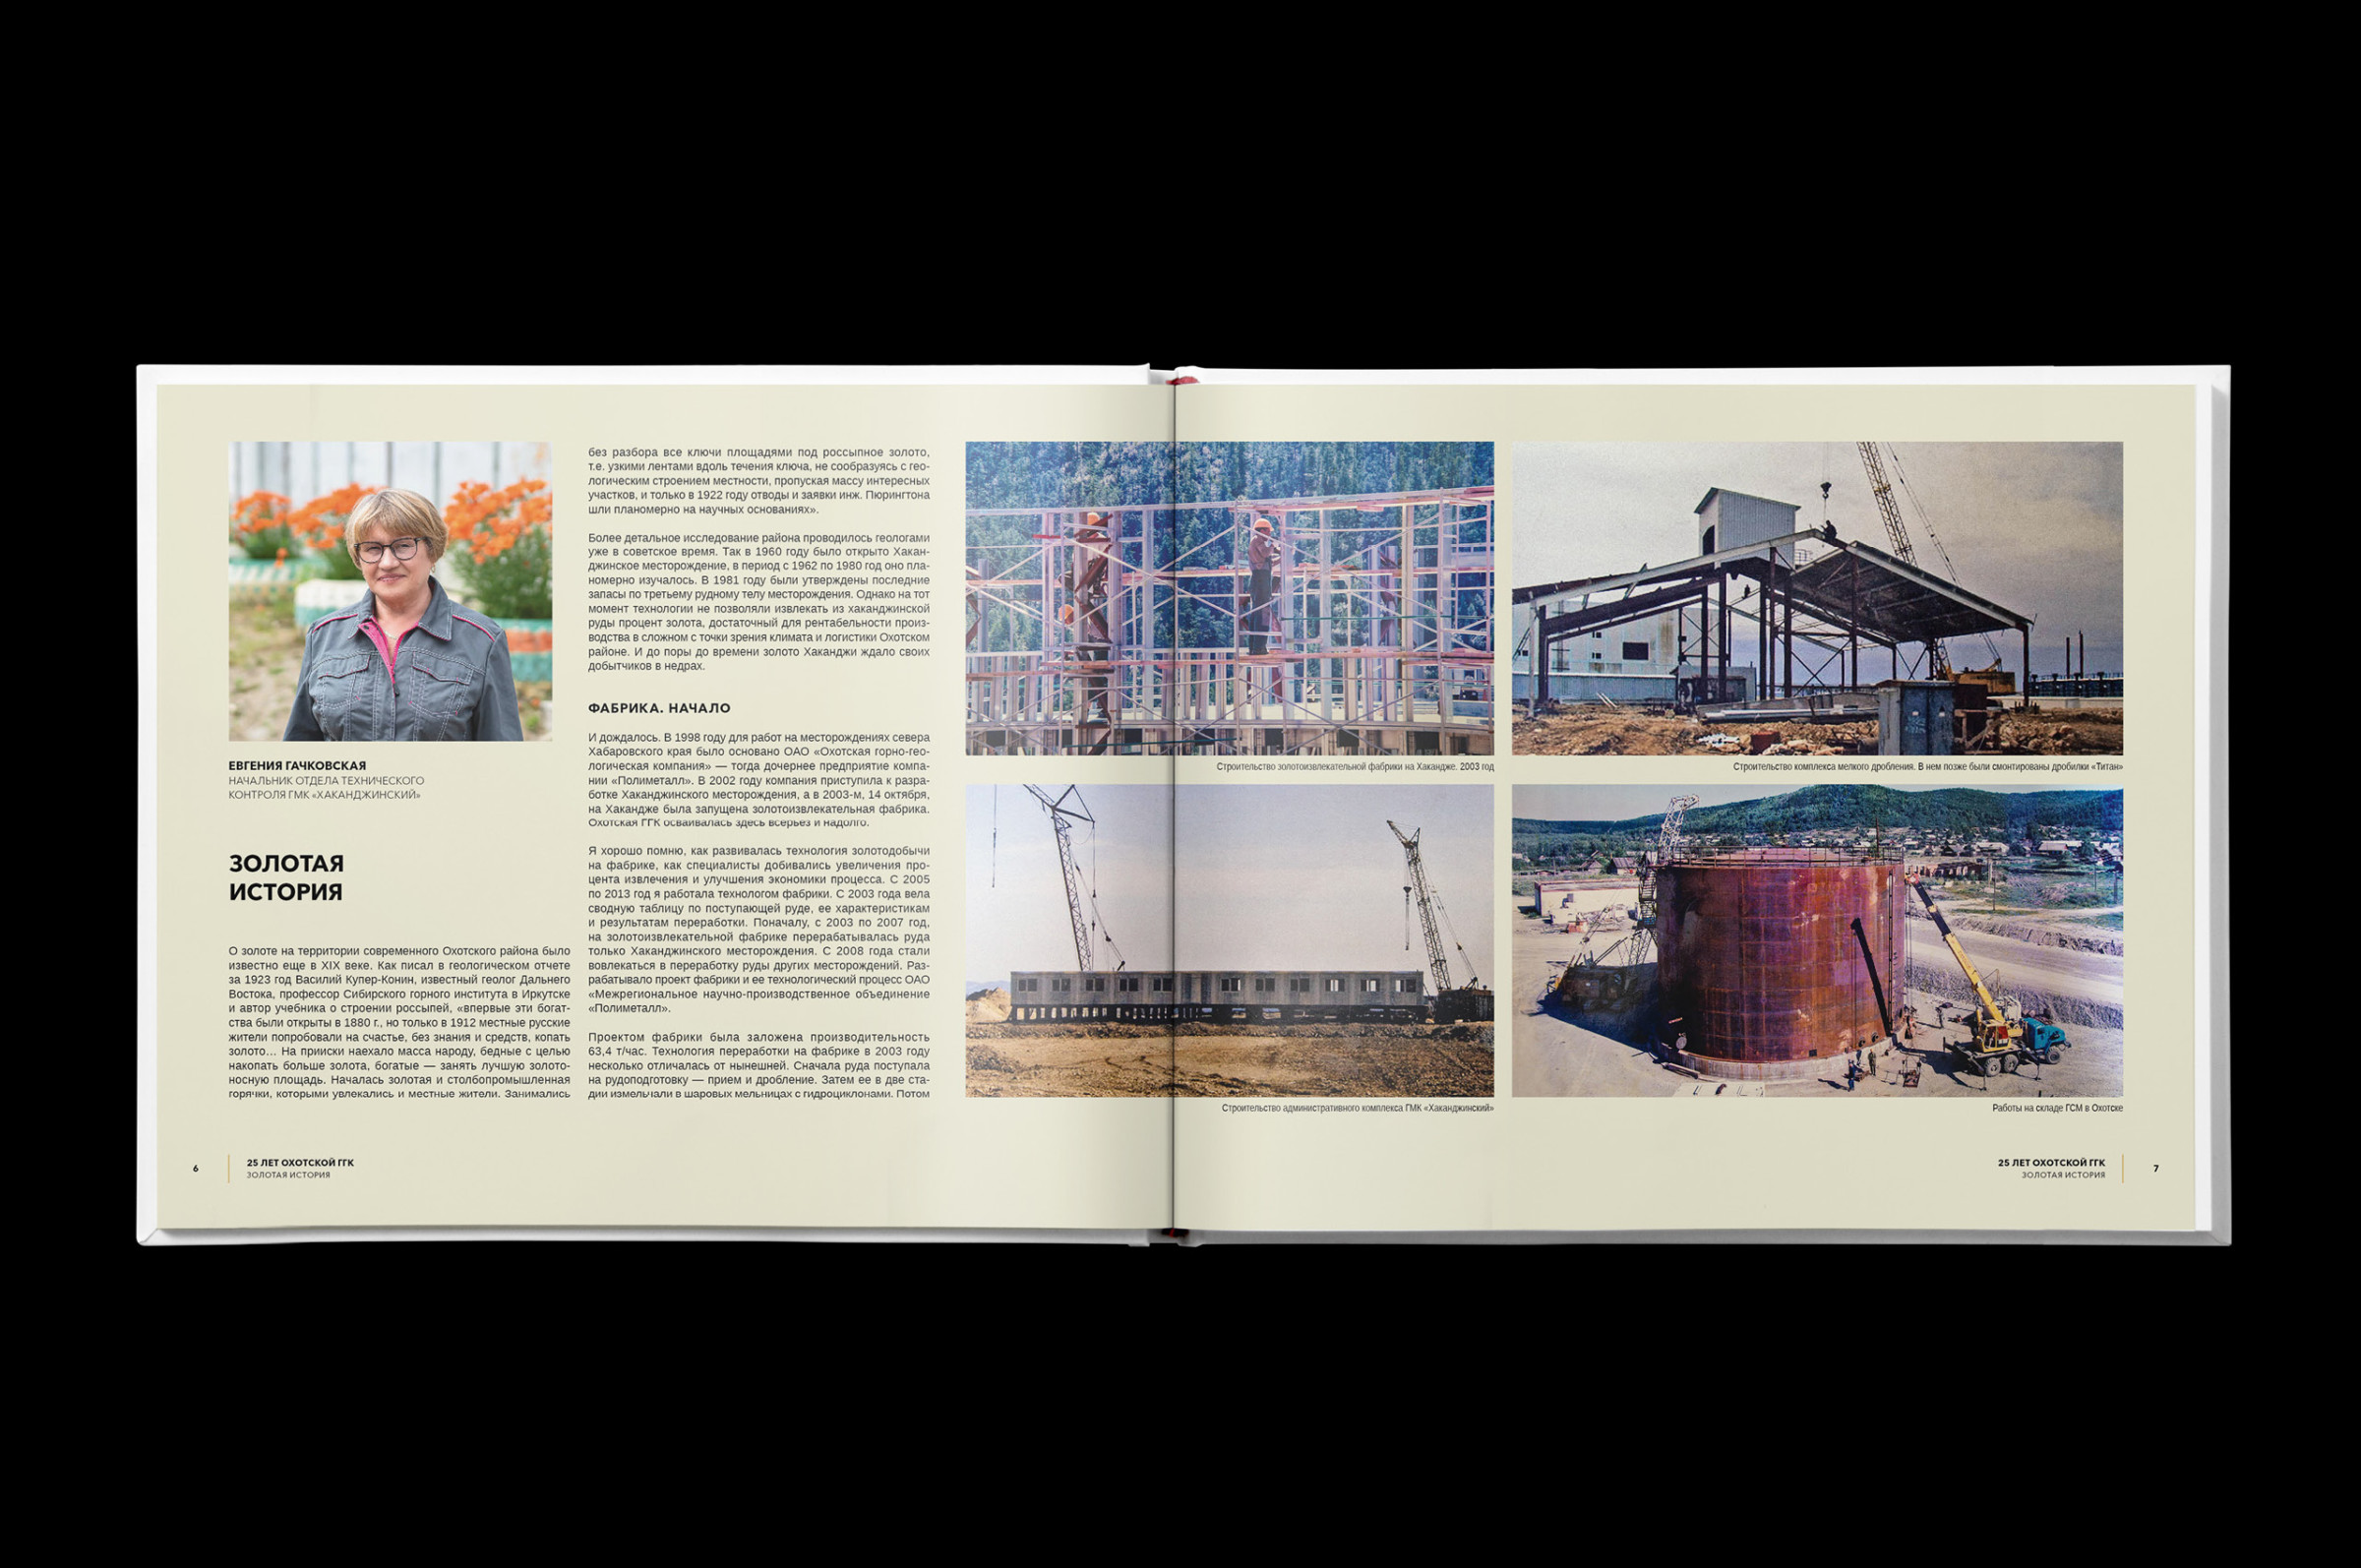 корпоративный юбилейный фотоальбом по заказу промышленной компании ОГГК содержит фопортажные, художественные и портретные фотографии, настоящая памятная фотокнига предприятия